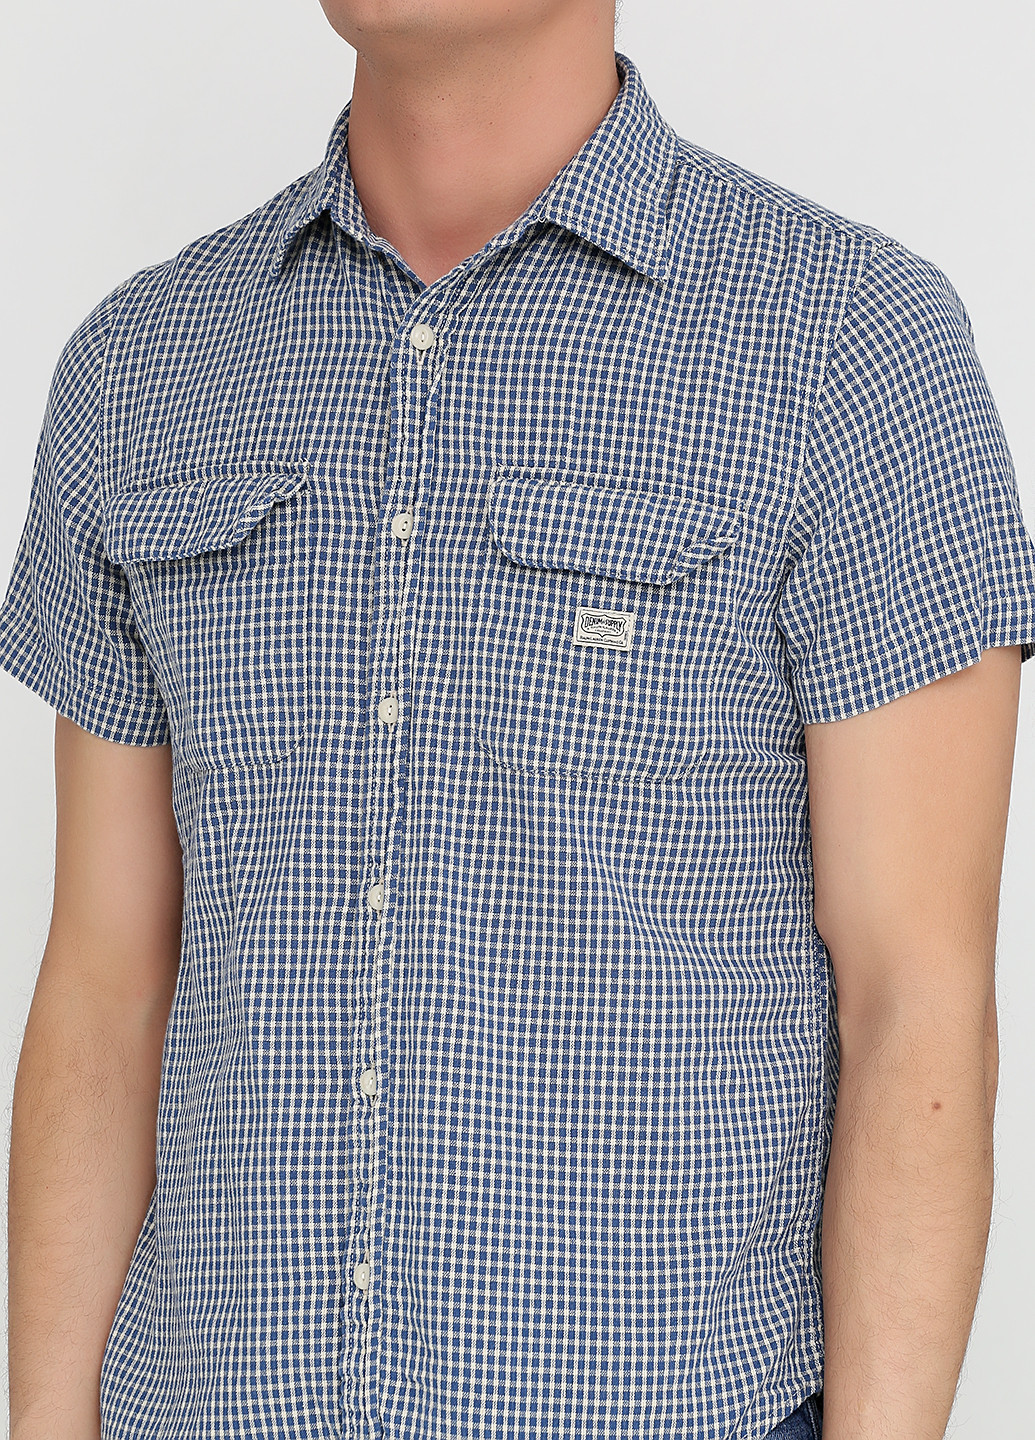 Синяя кэжуал рубашка в клетку Ralph Lauren с коротким рукавом